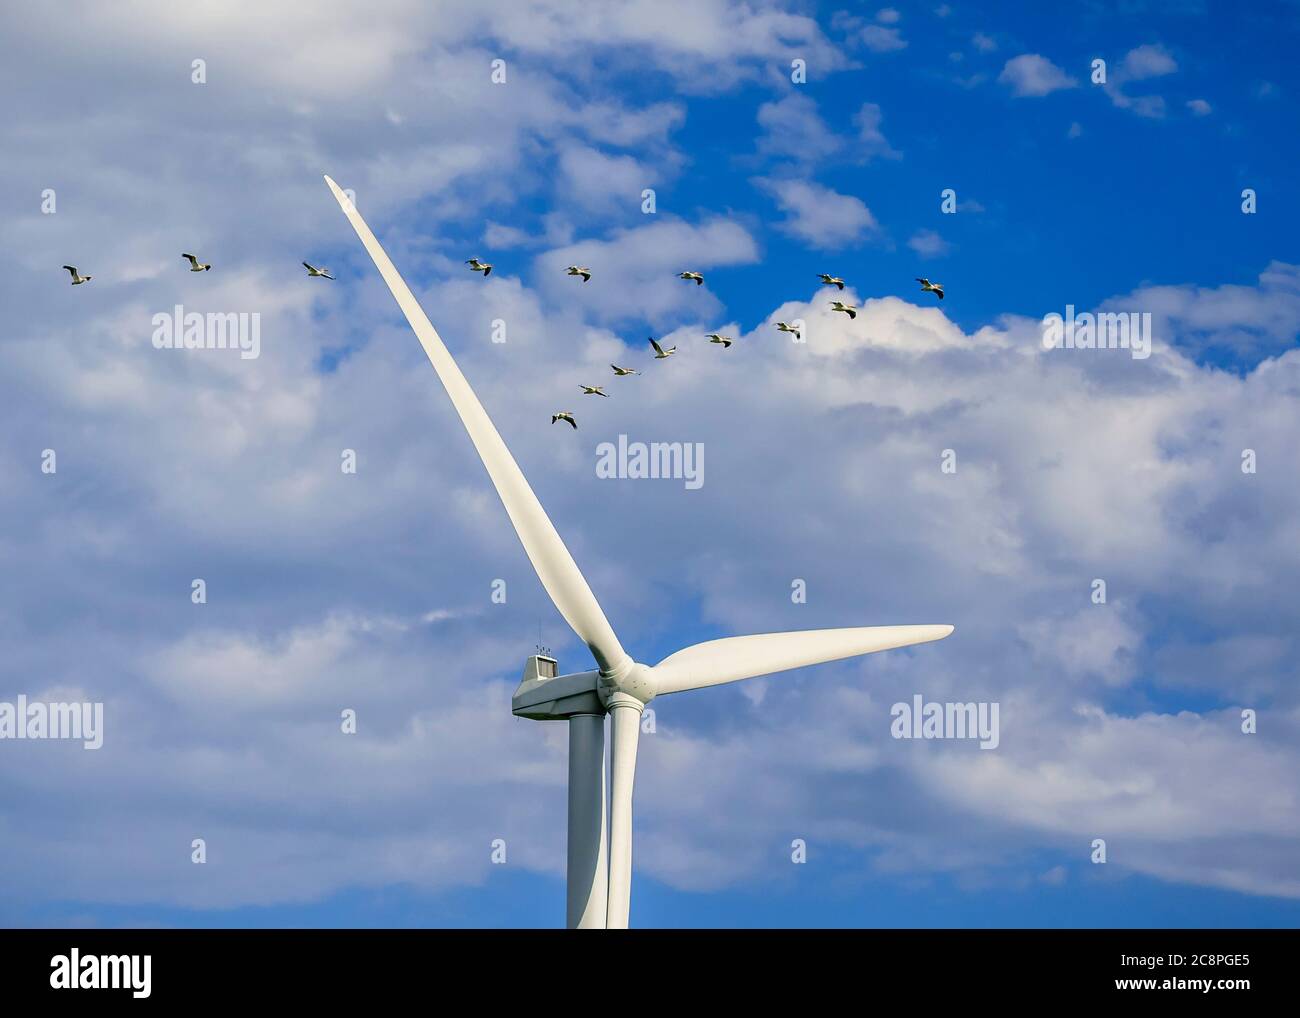 Pelícanos blancos americanos volando cerca de una turbina de energía eólica, San León, Manitoba, Canadá. Foto de stock